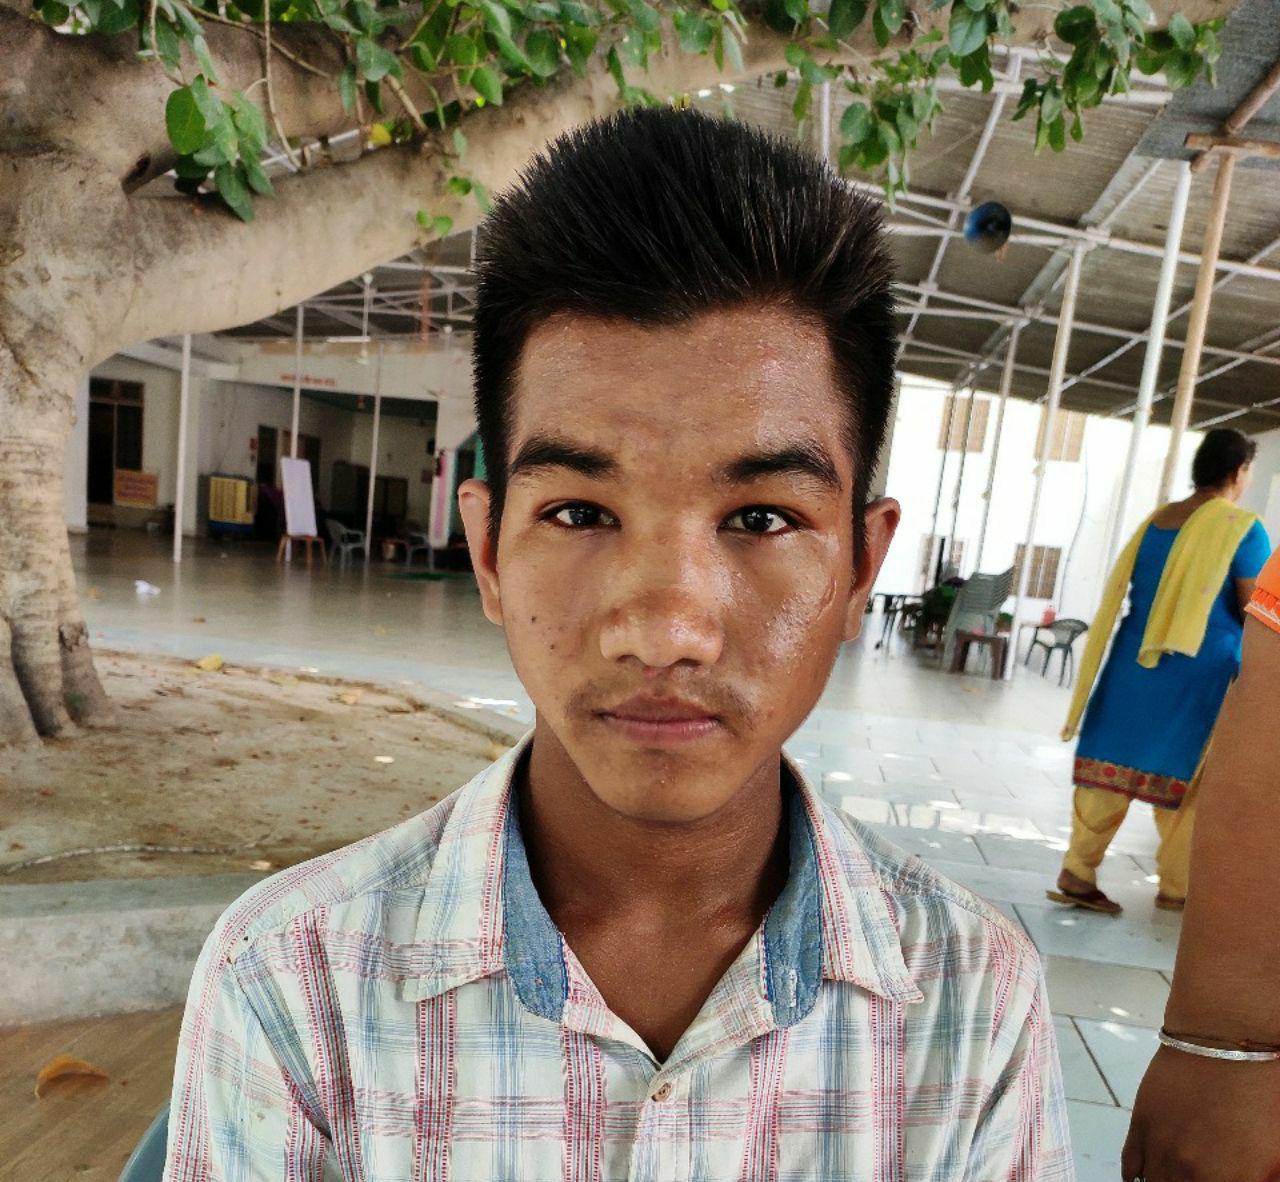 ढाई साल बाद मिले अबोहर से लापता हुए नेपाली किशोर के परिजन, जल्द होगा परिजनों के सुपुर्द